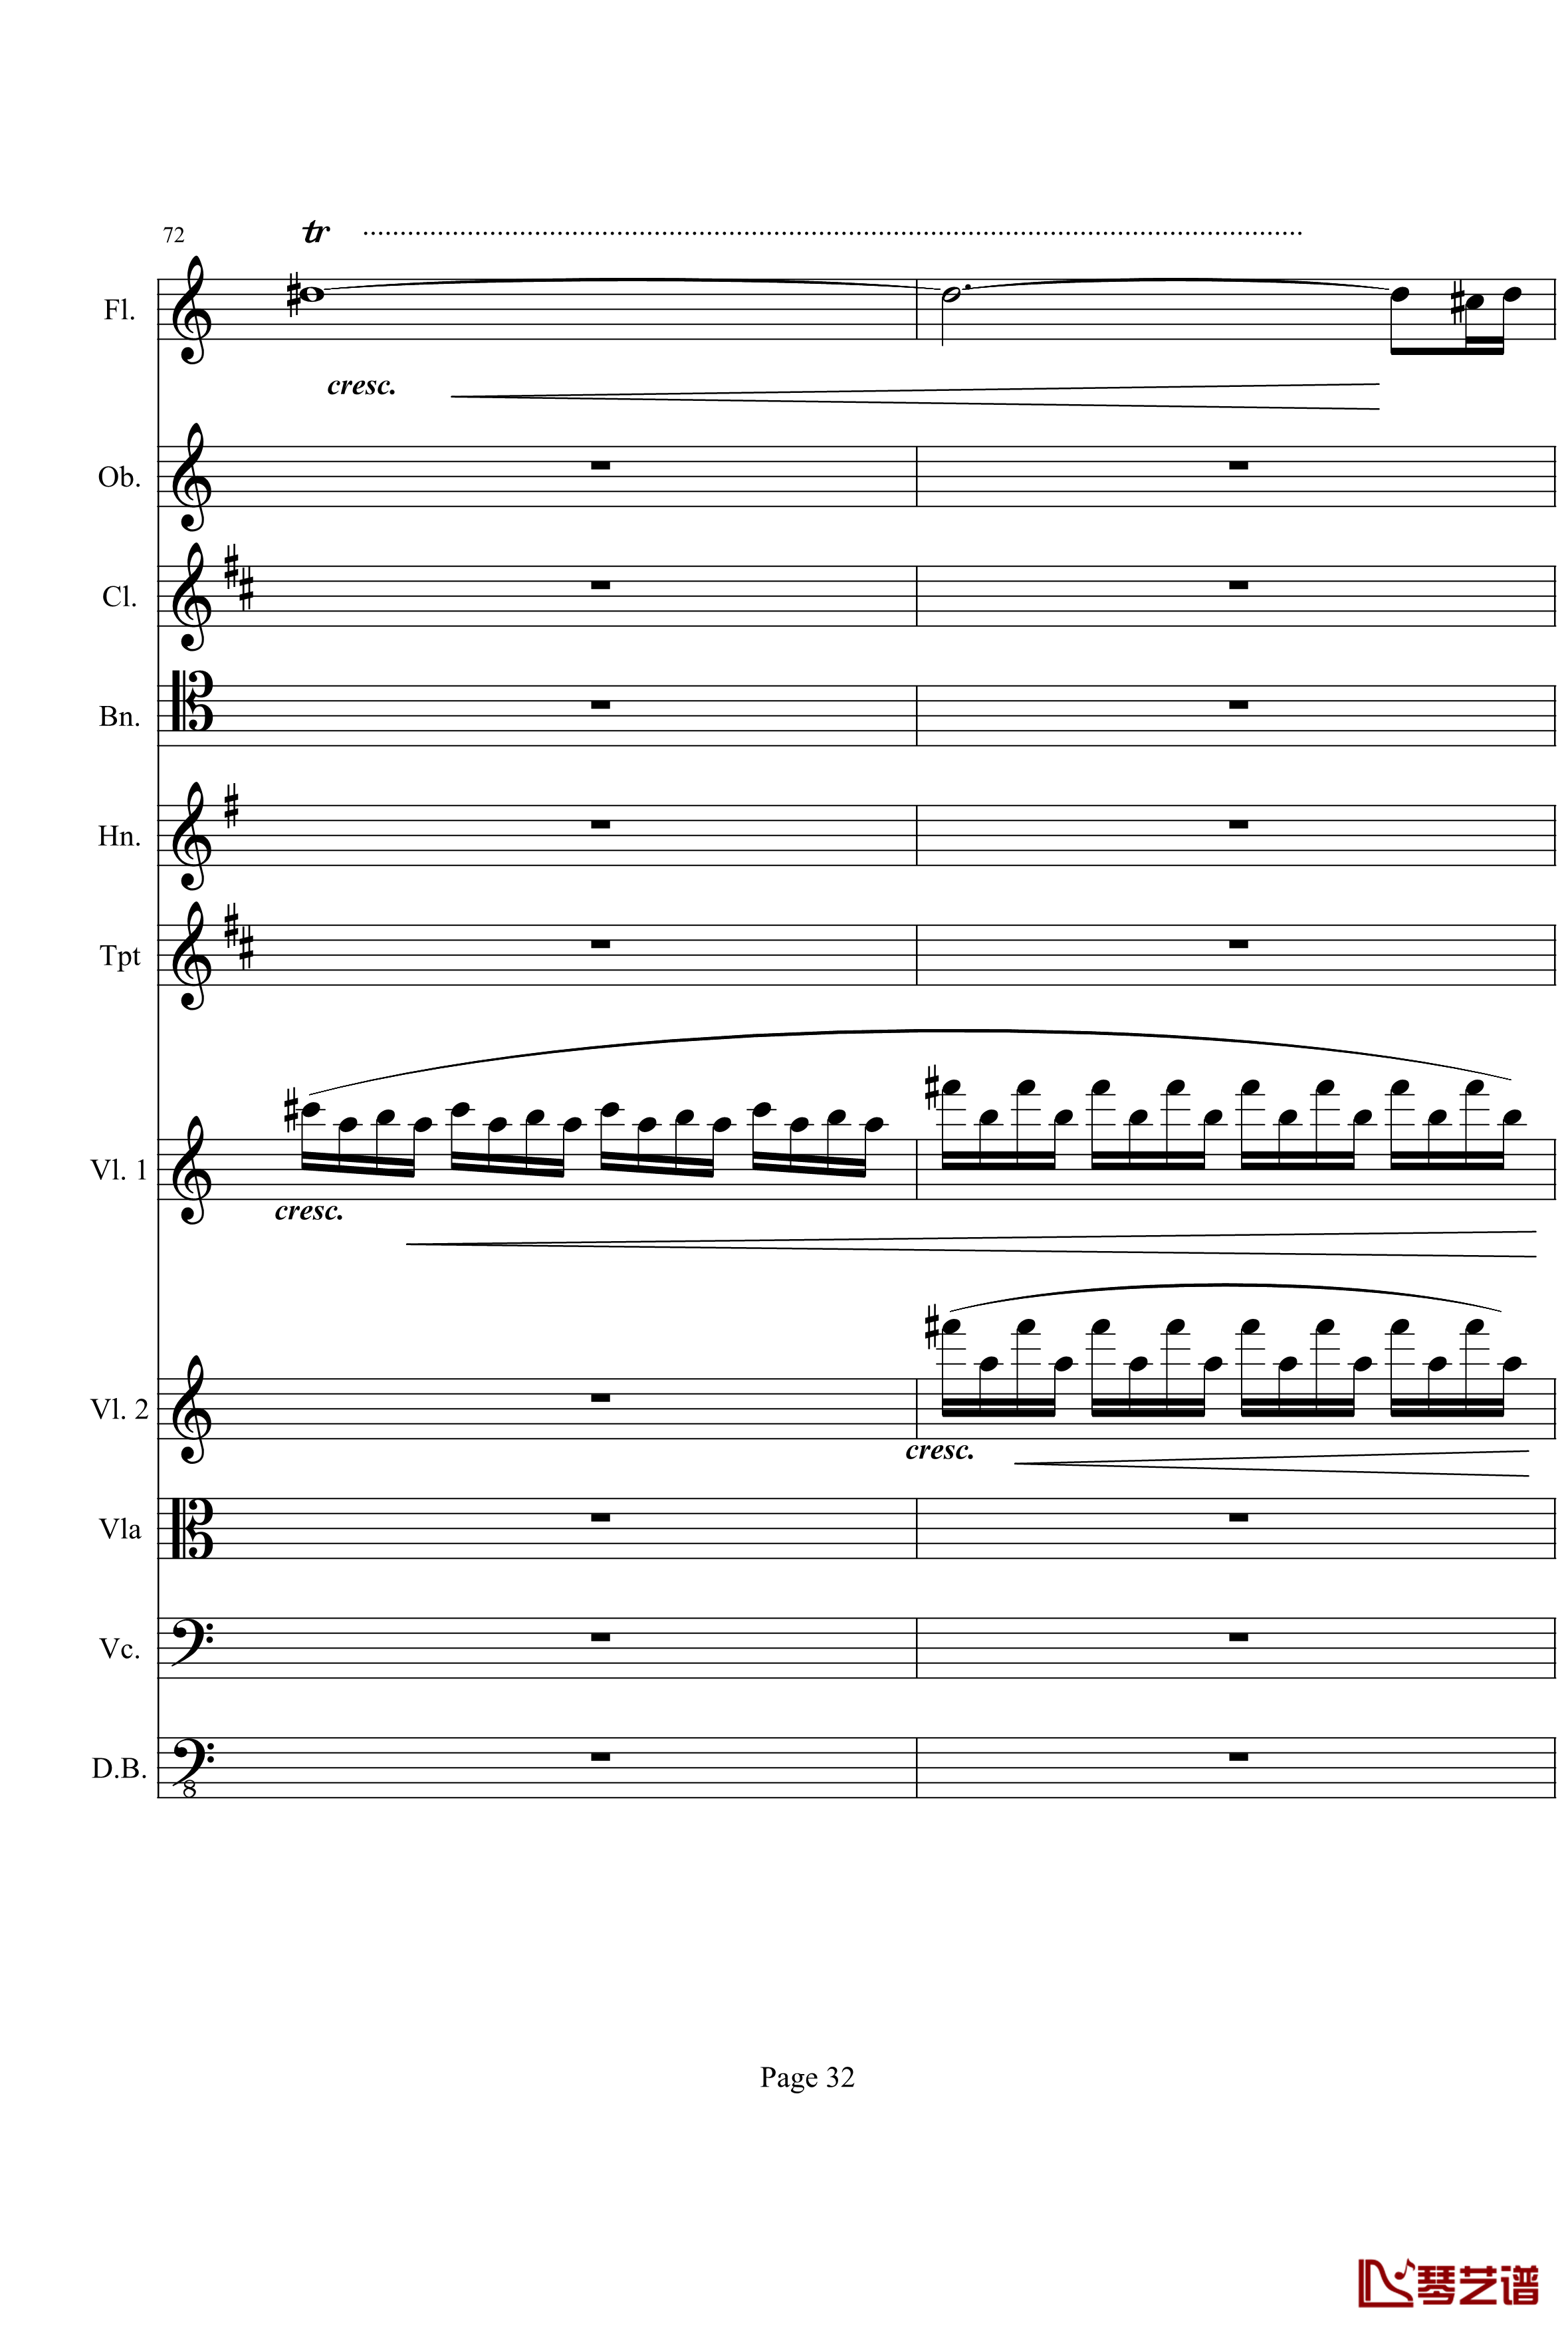 奏鸣曲之交响钢琴谱-第21首-Ⅰ-贝多芬-beethoven32